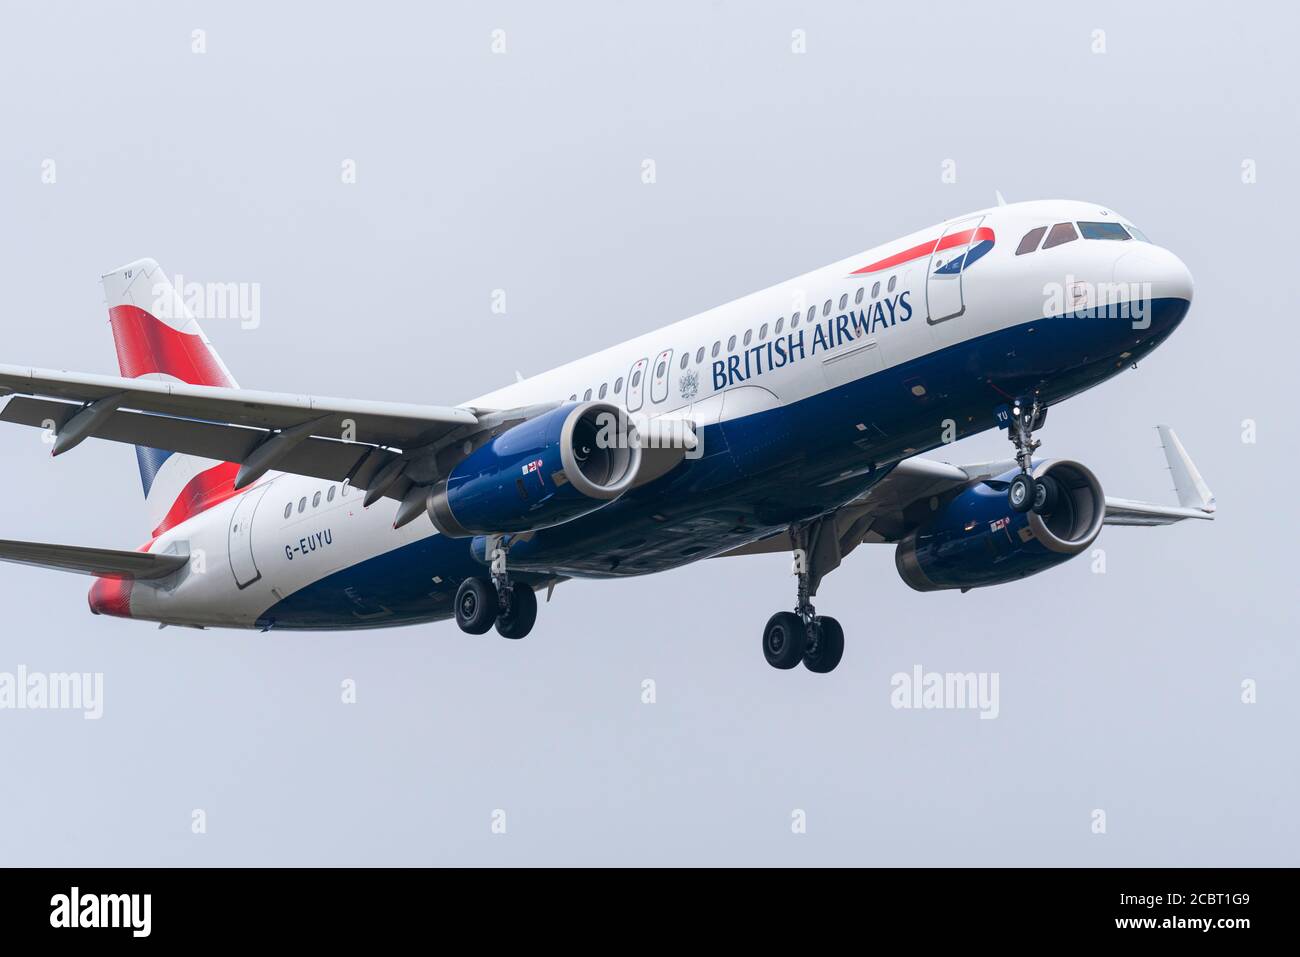 British Airways Airbus A320 Jet-Flugzeug Landung am Flughafen London Heathrow, Großbritannien, während COVID-19 Coronavirus Pandemie, bei schlechtem Wetter Stockfoto